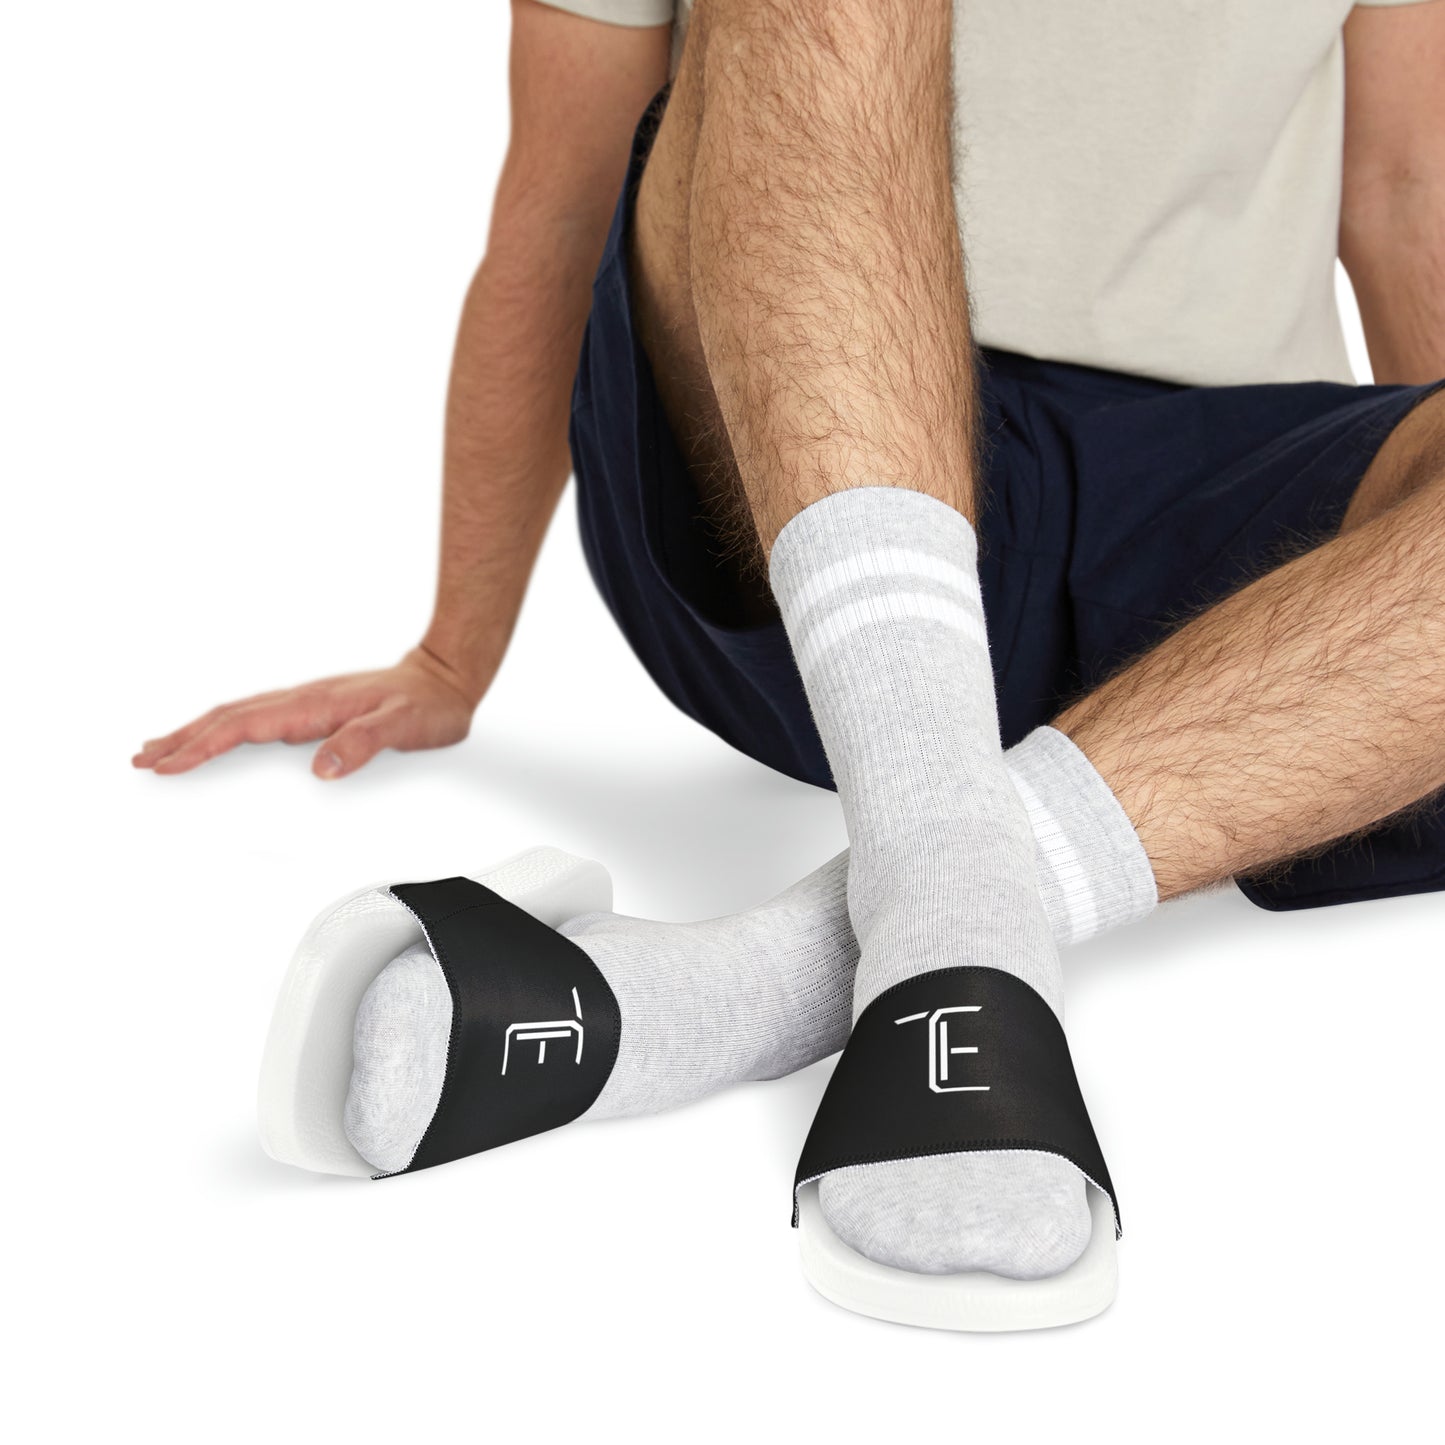 Tsalack Express Men's PU Slide Sandals